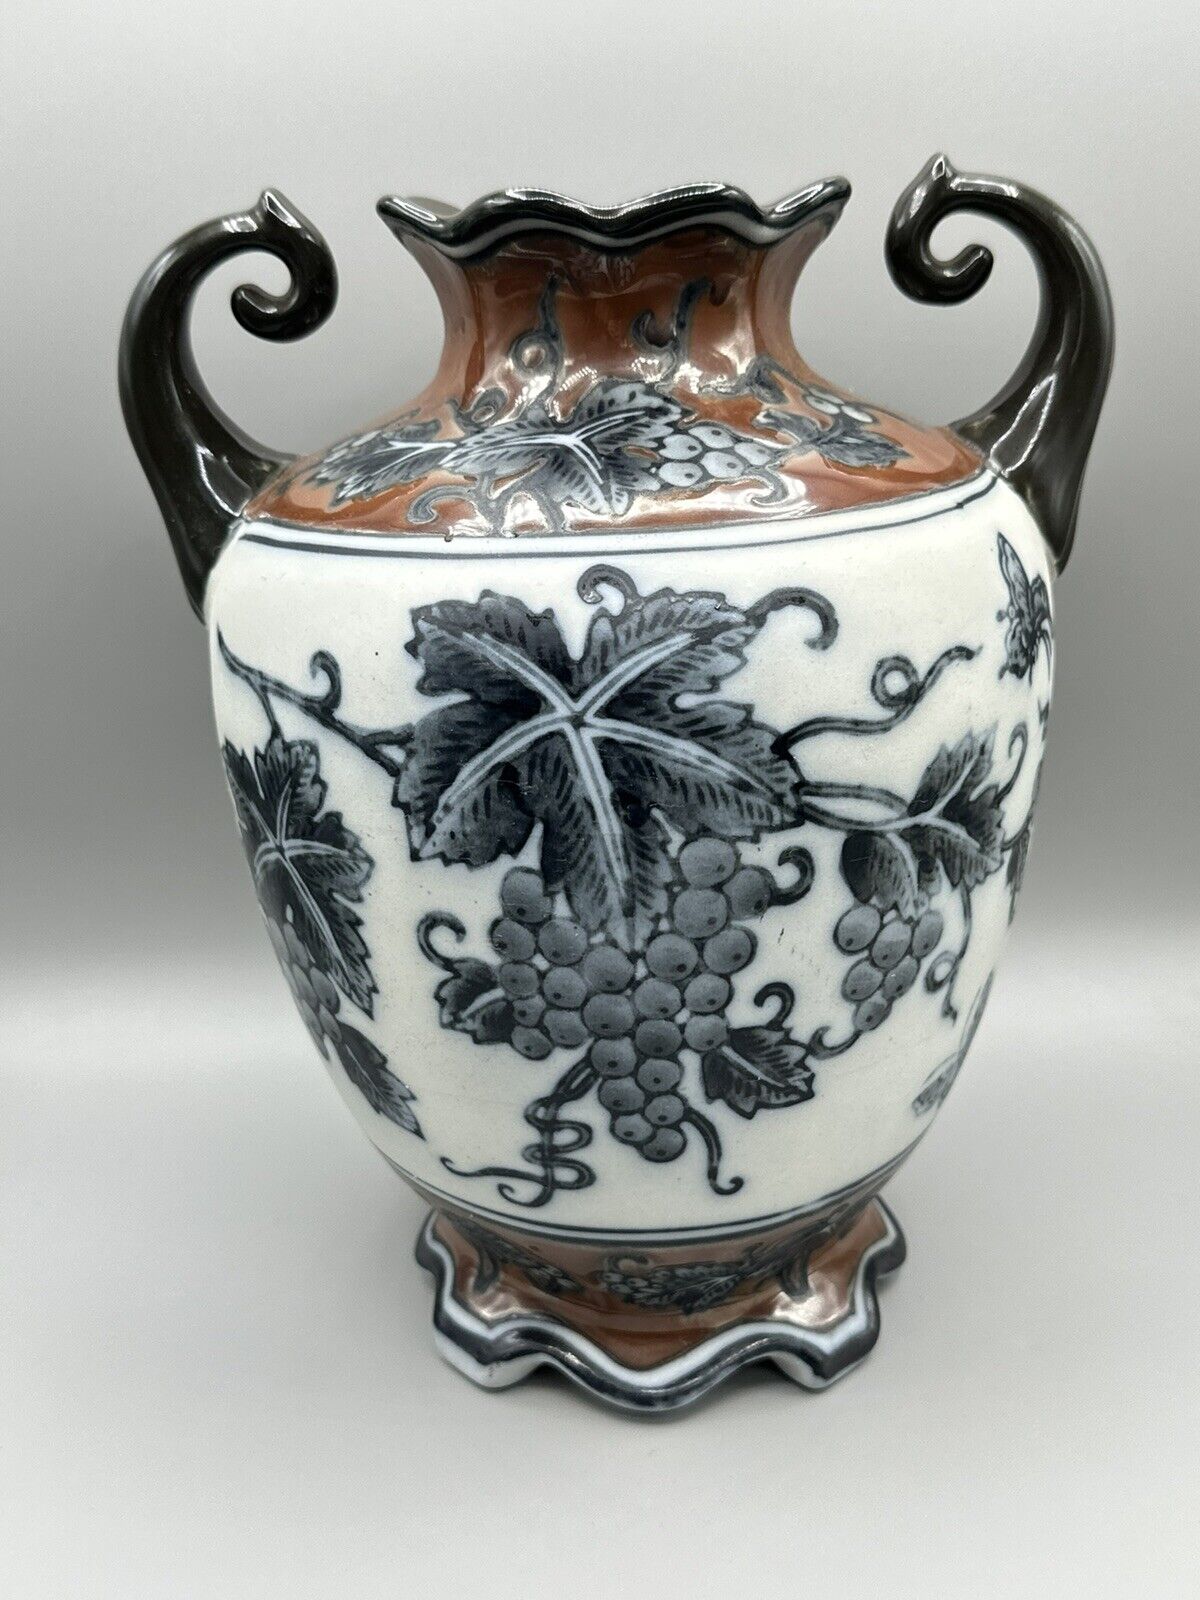 Vintage Antique Ceramic Handled Gourd Vase Brown Floral Flower Design 10in”